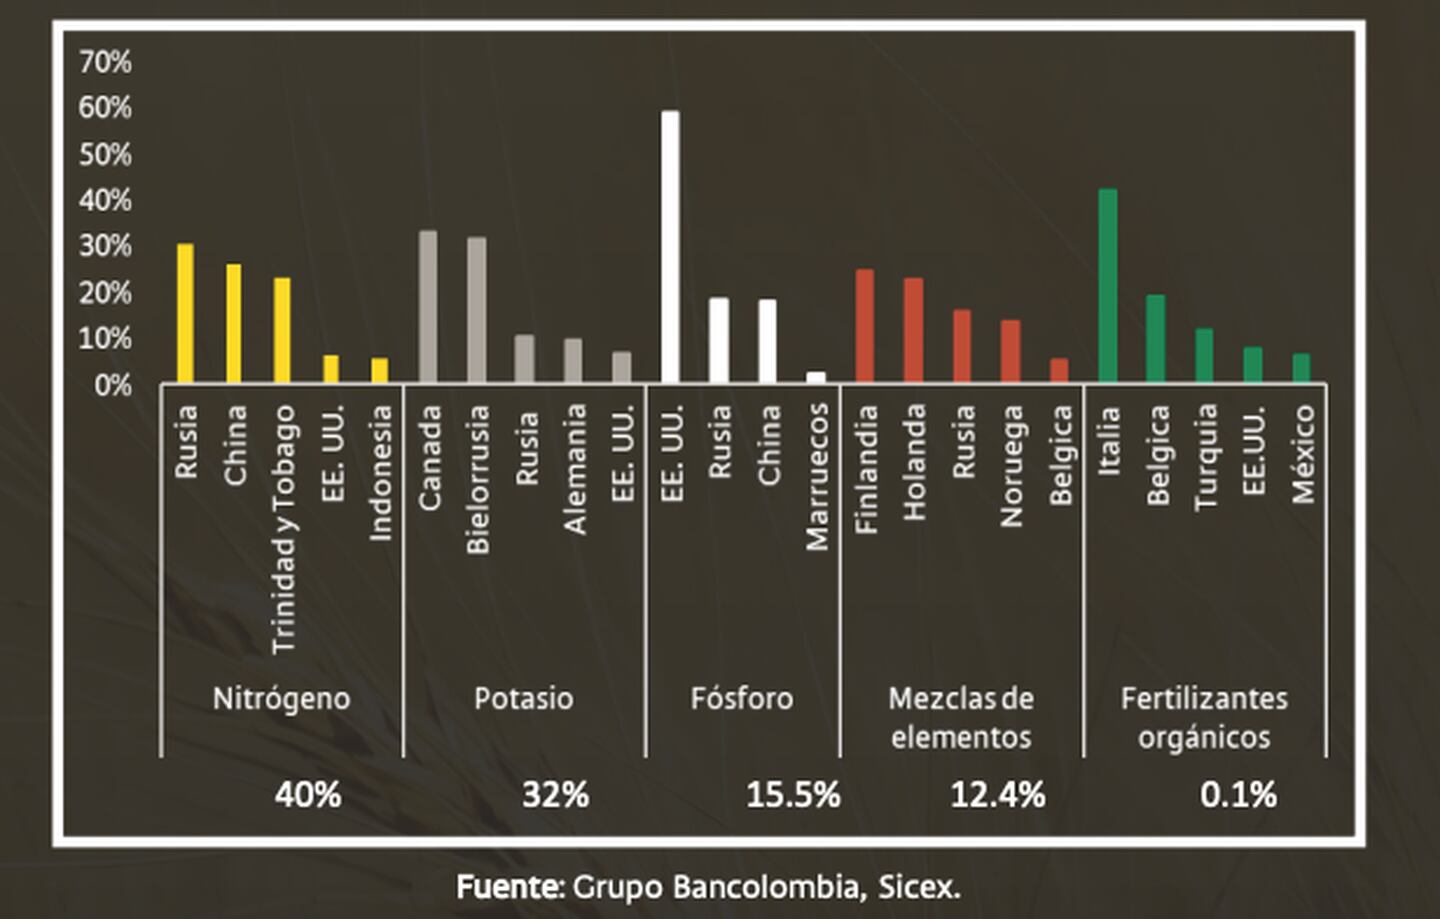 Origen de las importaciones de fertilizantes en Colombia y participación por tipo de fertilizantedfd